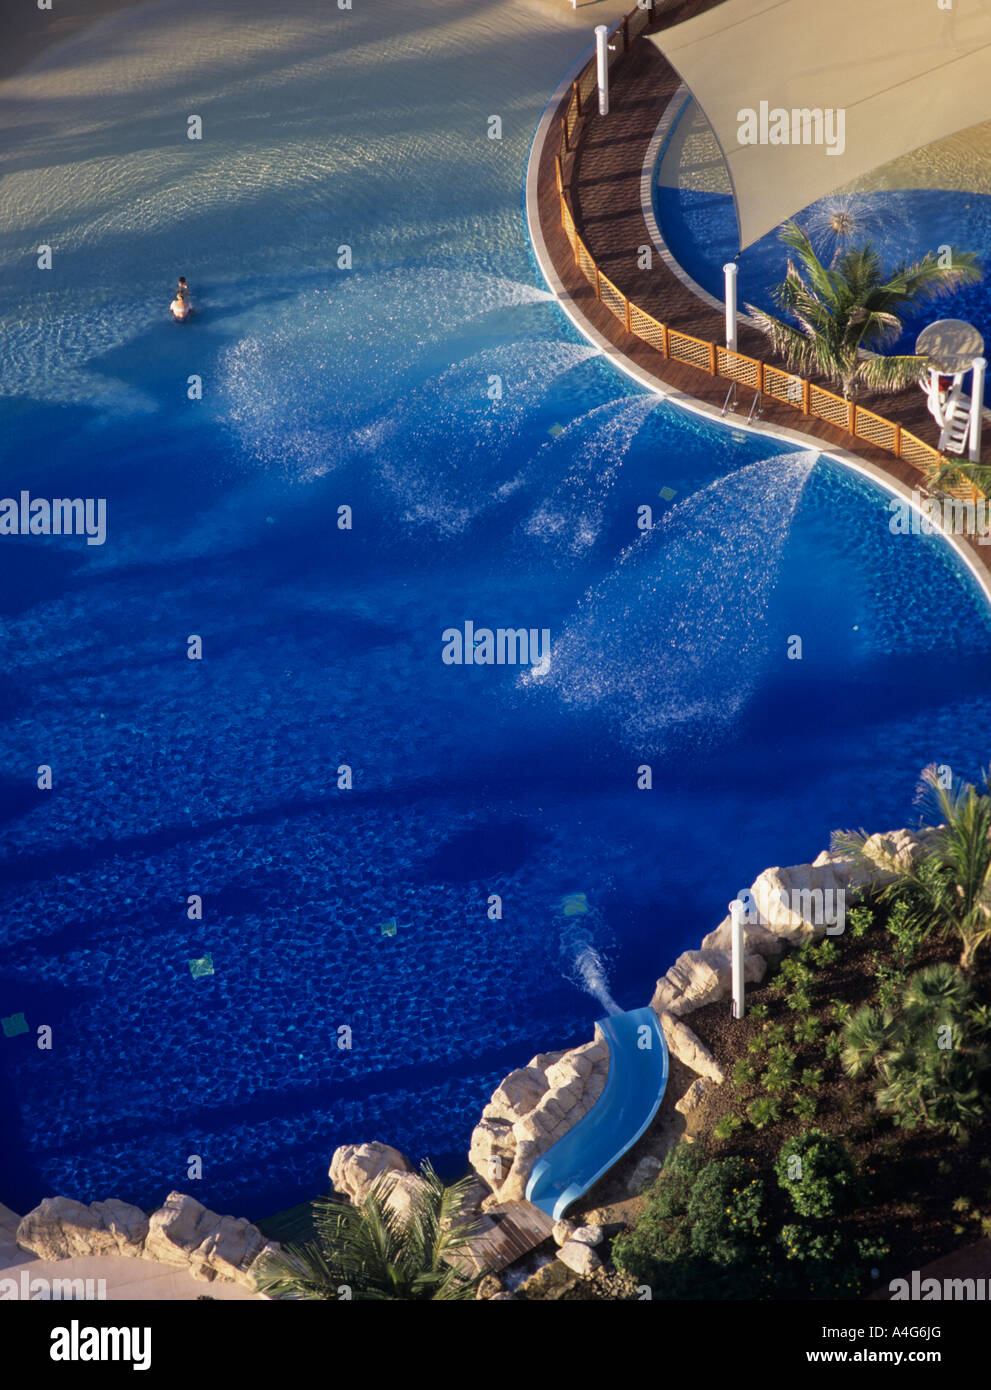 Pool and Jacuzzi in Jumeirah Beach Resort and Burj al Arab Dubai Stock Photo